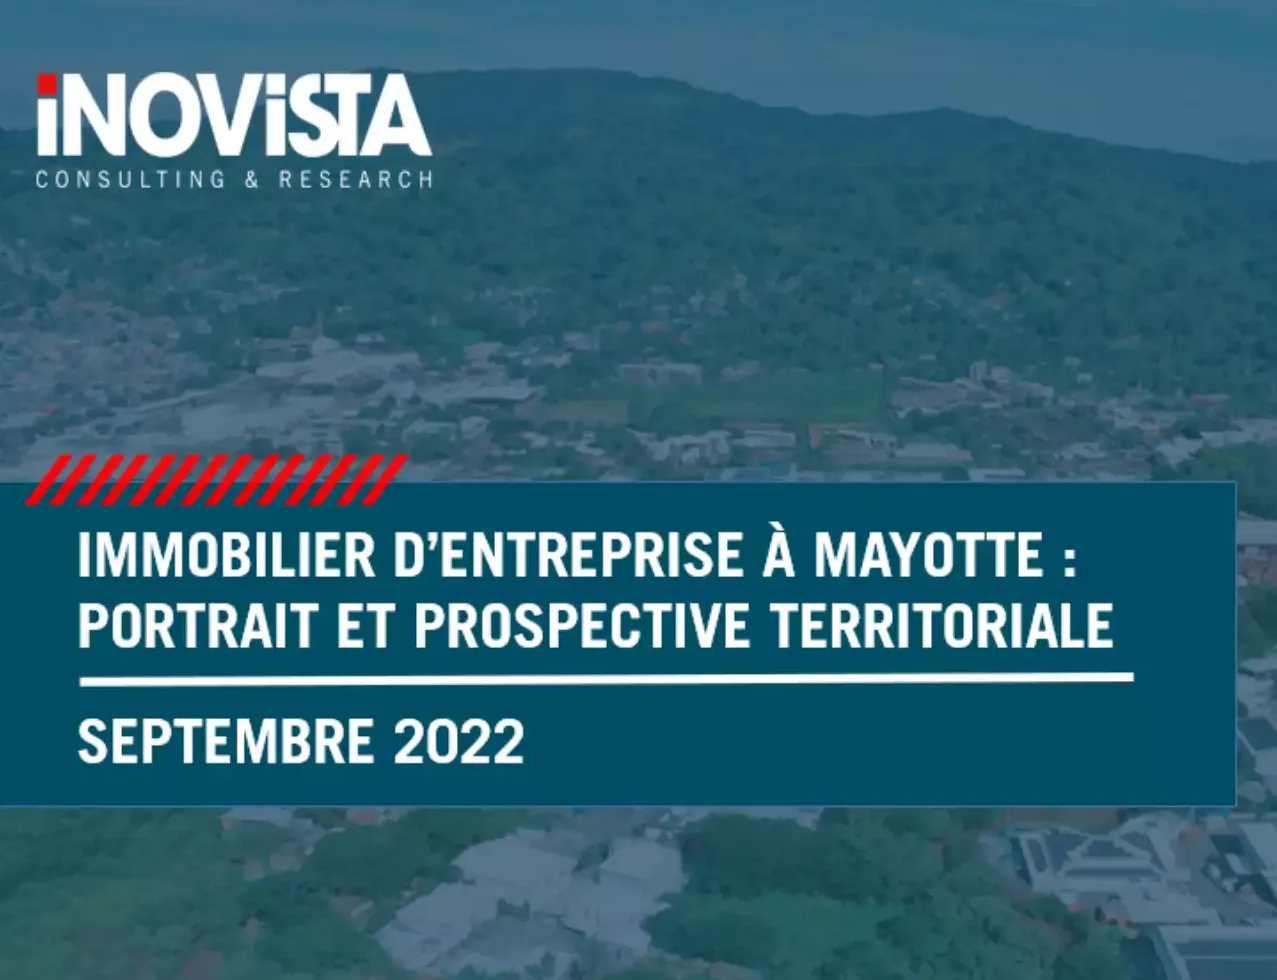 Immobilier d’entreprise à Mayotte